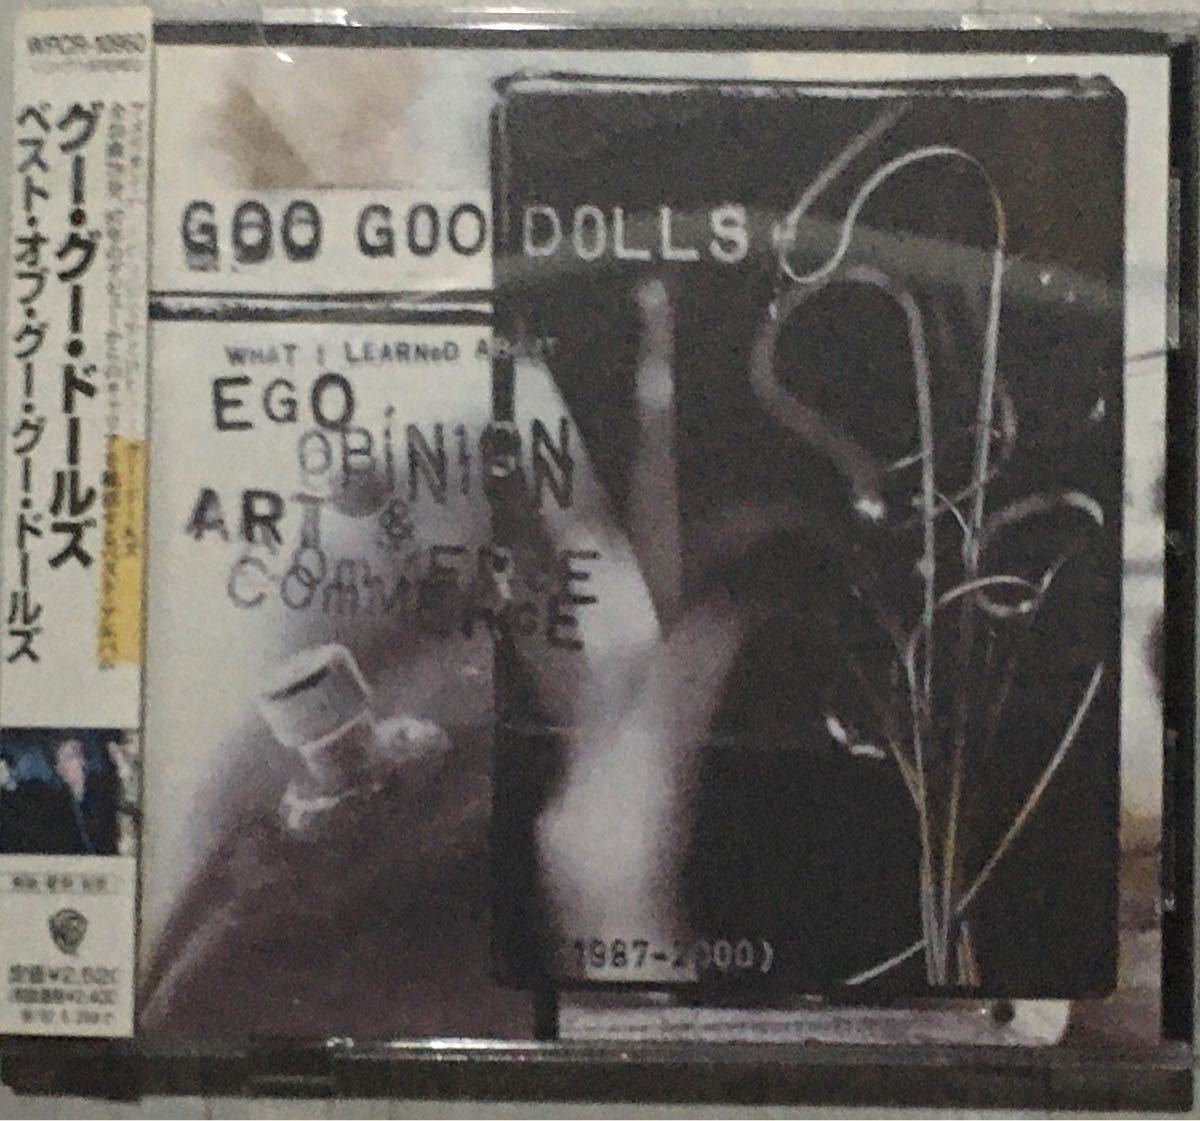 ◆洋楽アルバムCD◆Goo Goo dolls「best of Goo Goo dolls」※帯あり●レンタルアップCD